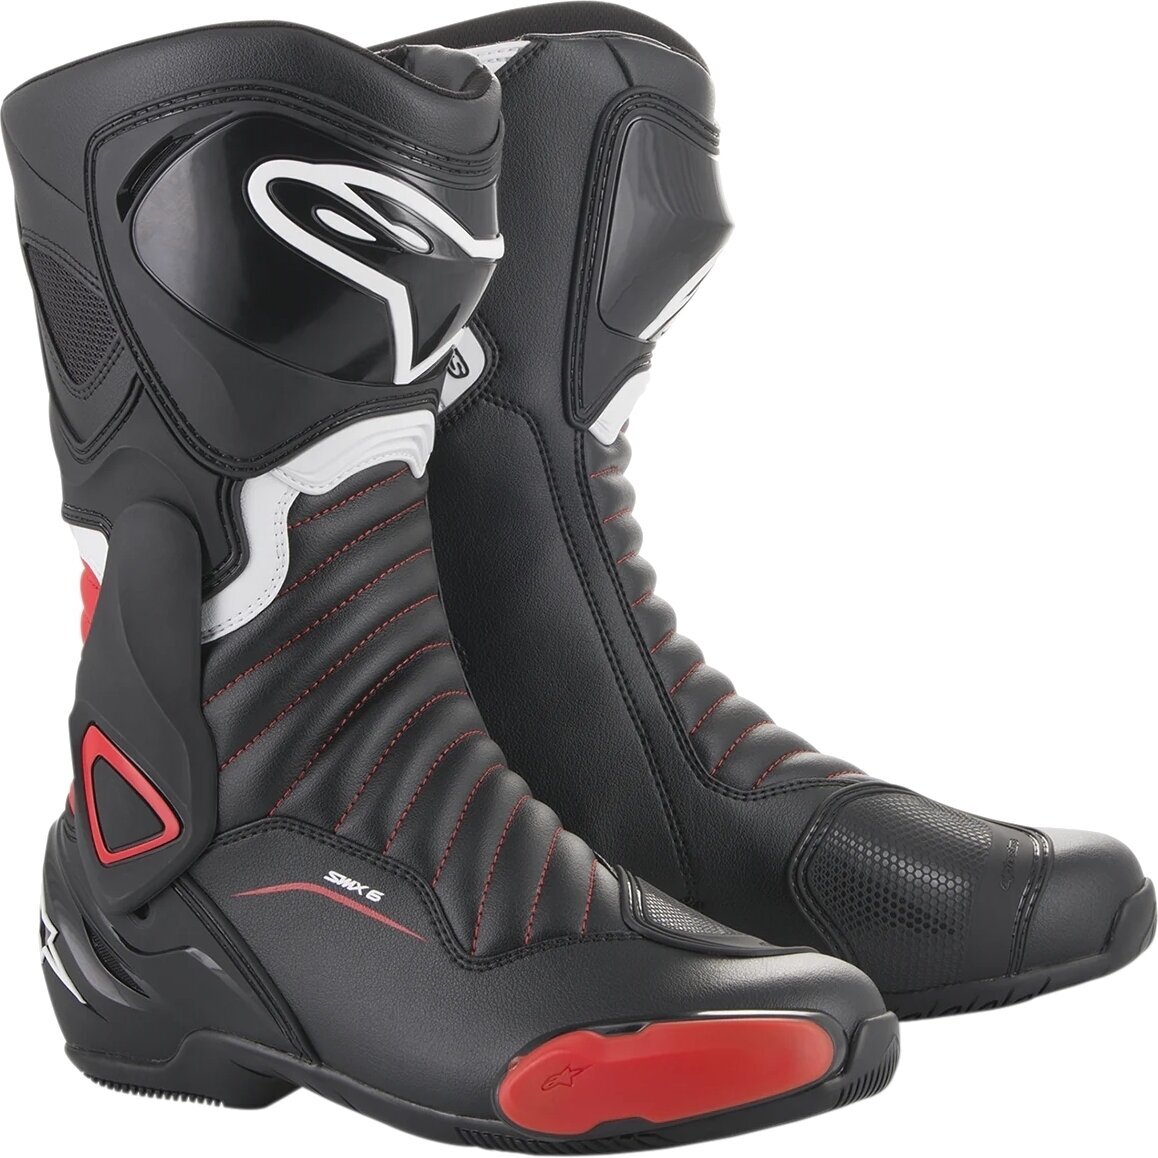 Boty Alpinestars SMX-6 V2 Boots Black/Gray/Red Fluo 38 Boty